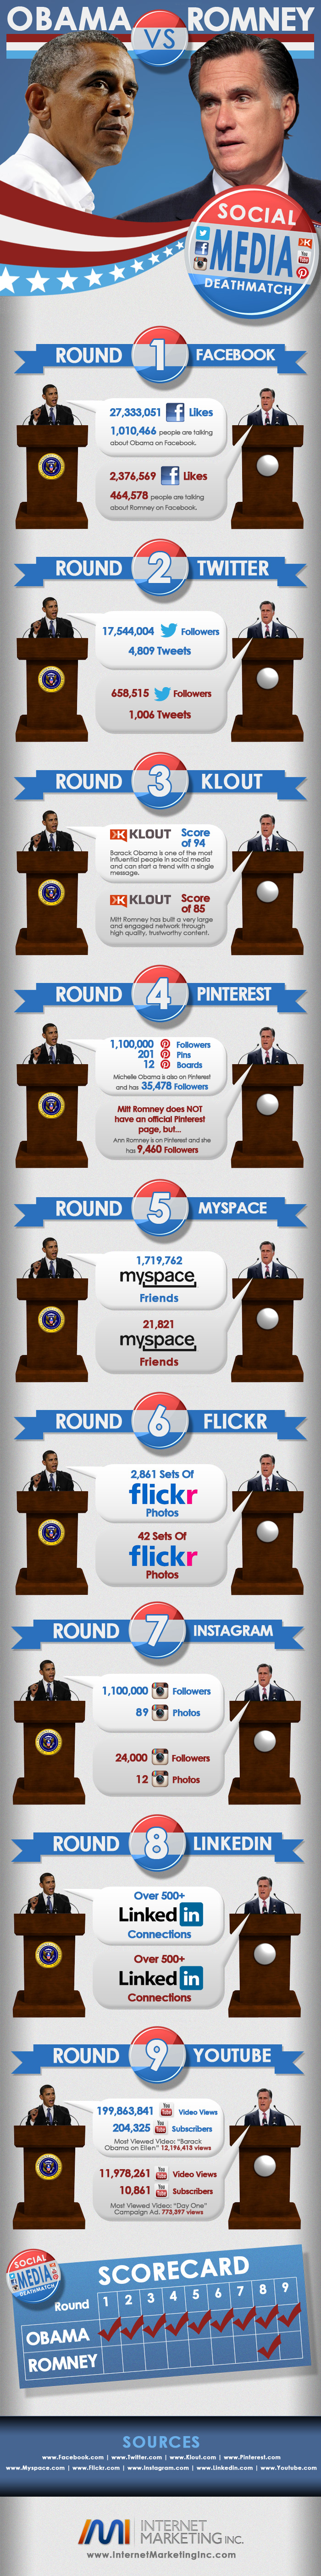 Social Media Showdown: Obama vs Romney